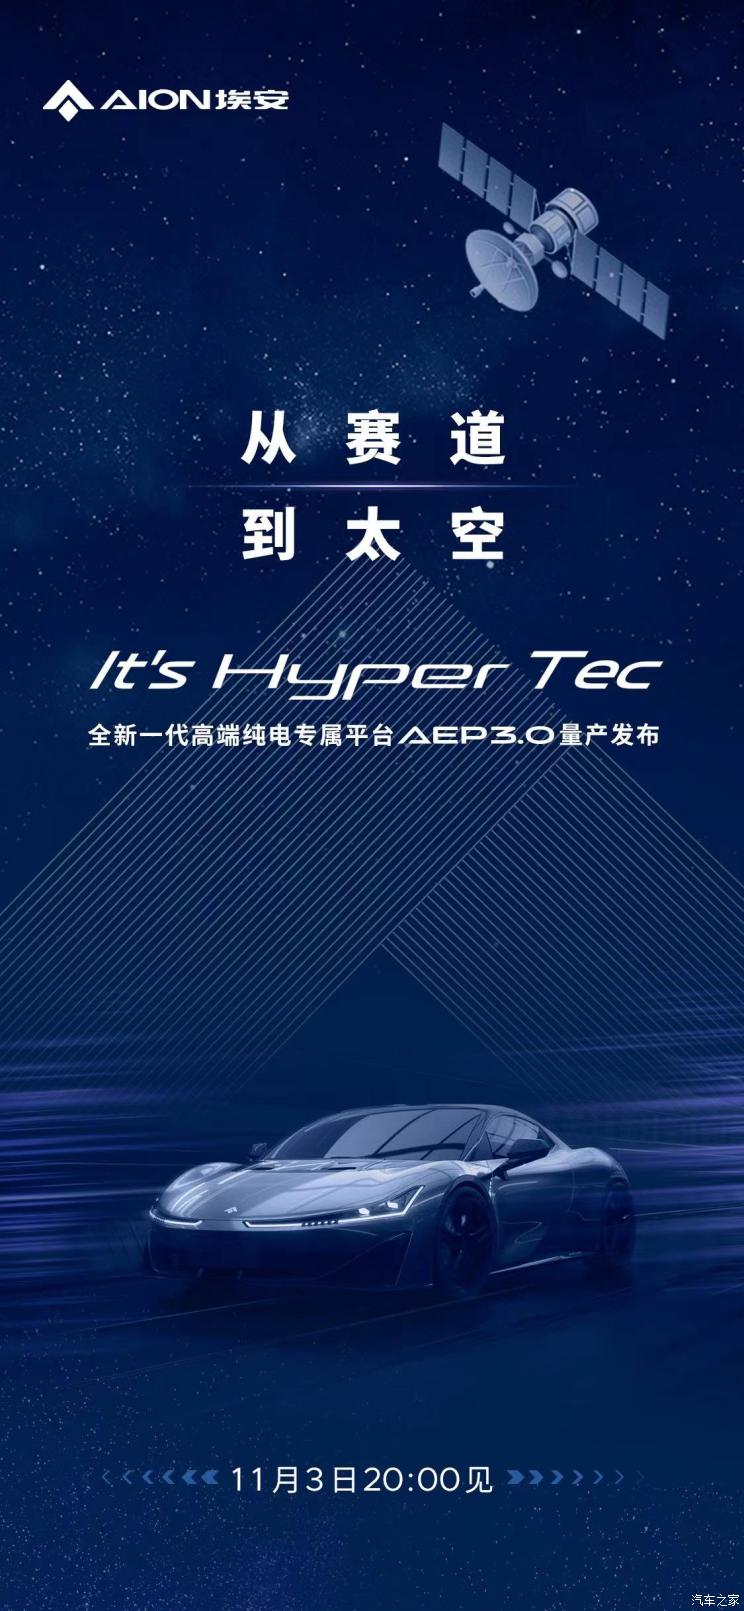 埃安HyperTec量产电动平台11月3日发布